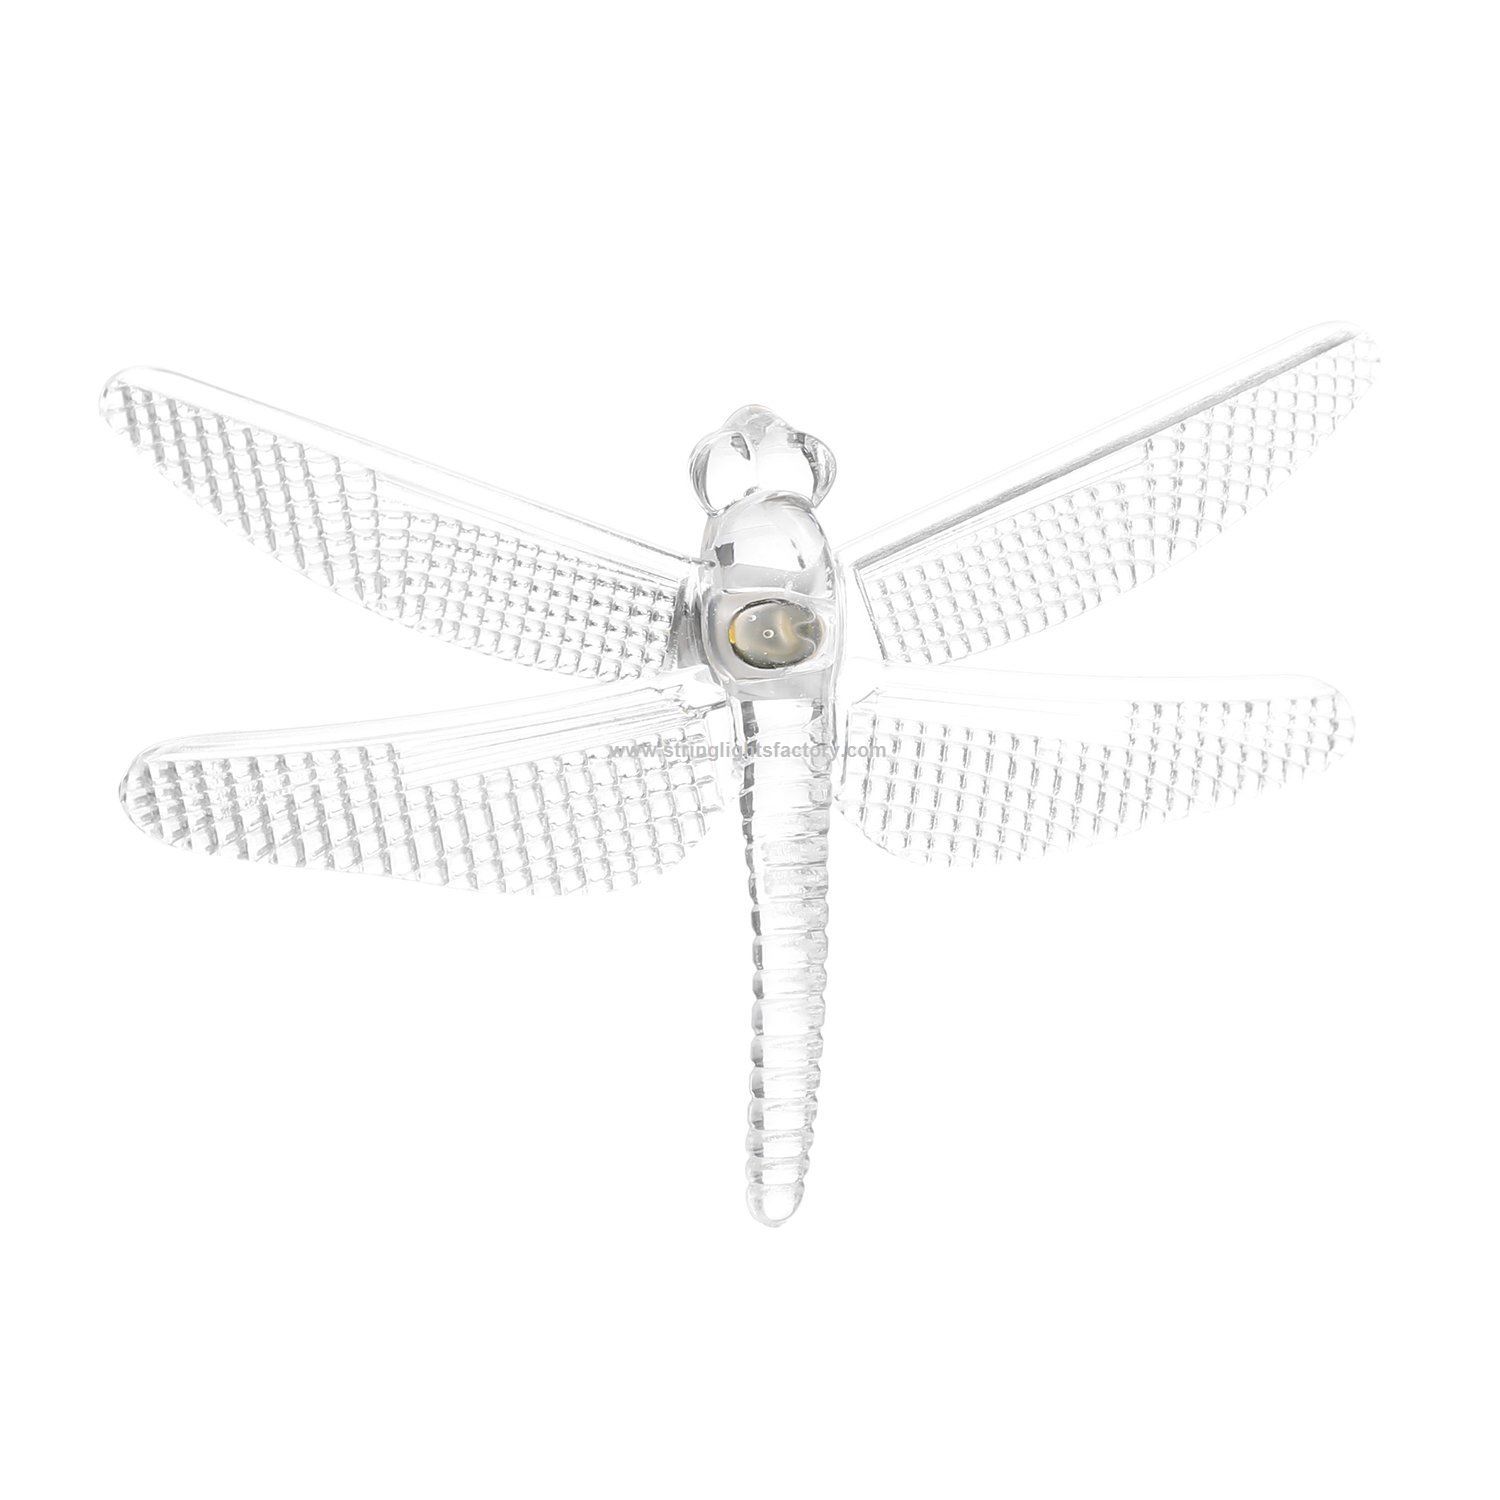 Dragonfly Shape 19.7 ft 30 LEDs Solar Powered String Lights Waterproof LED String Lights